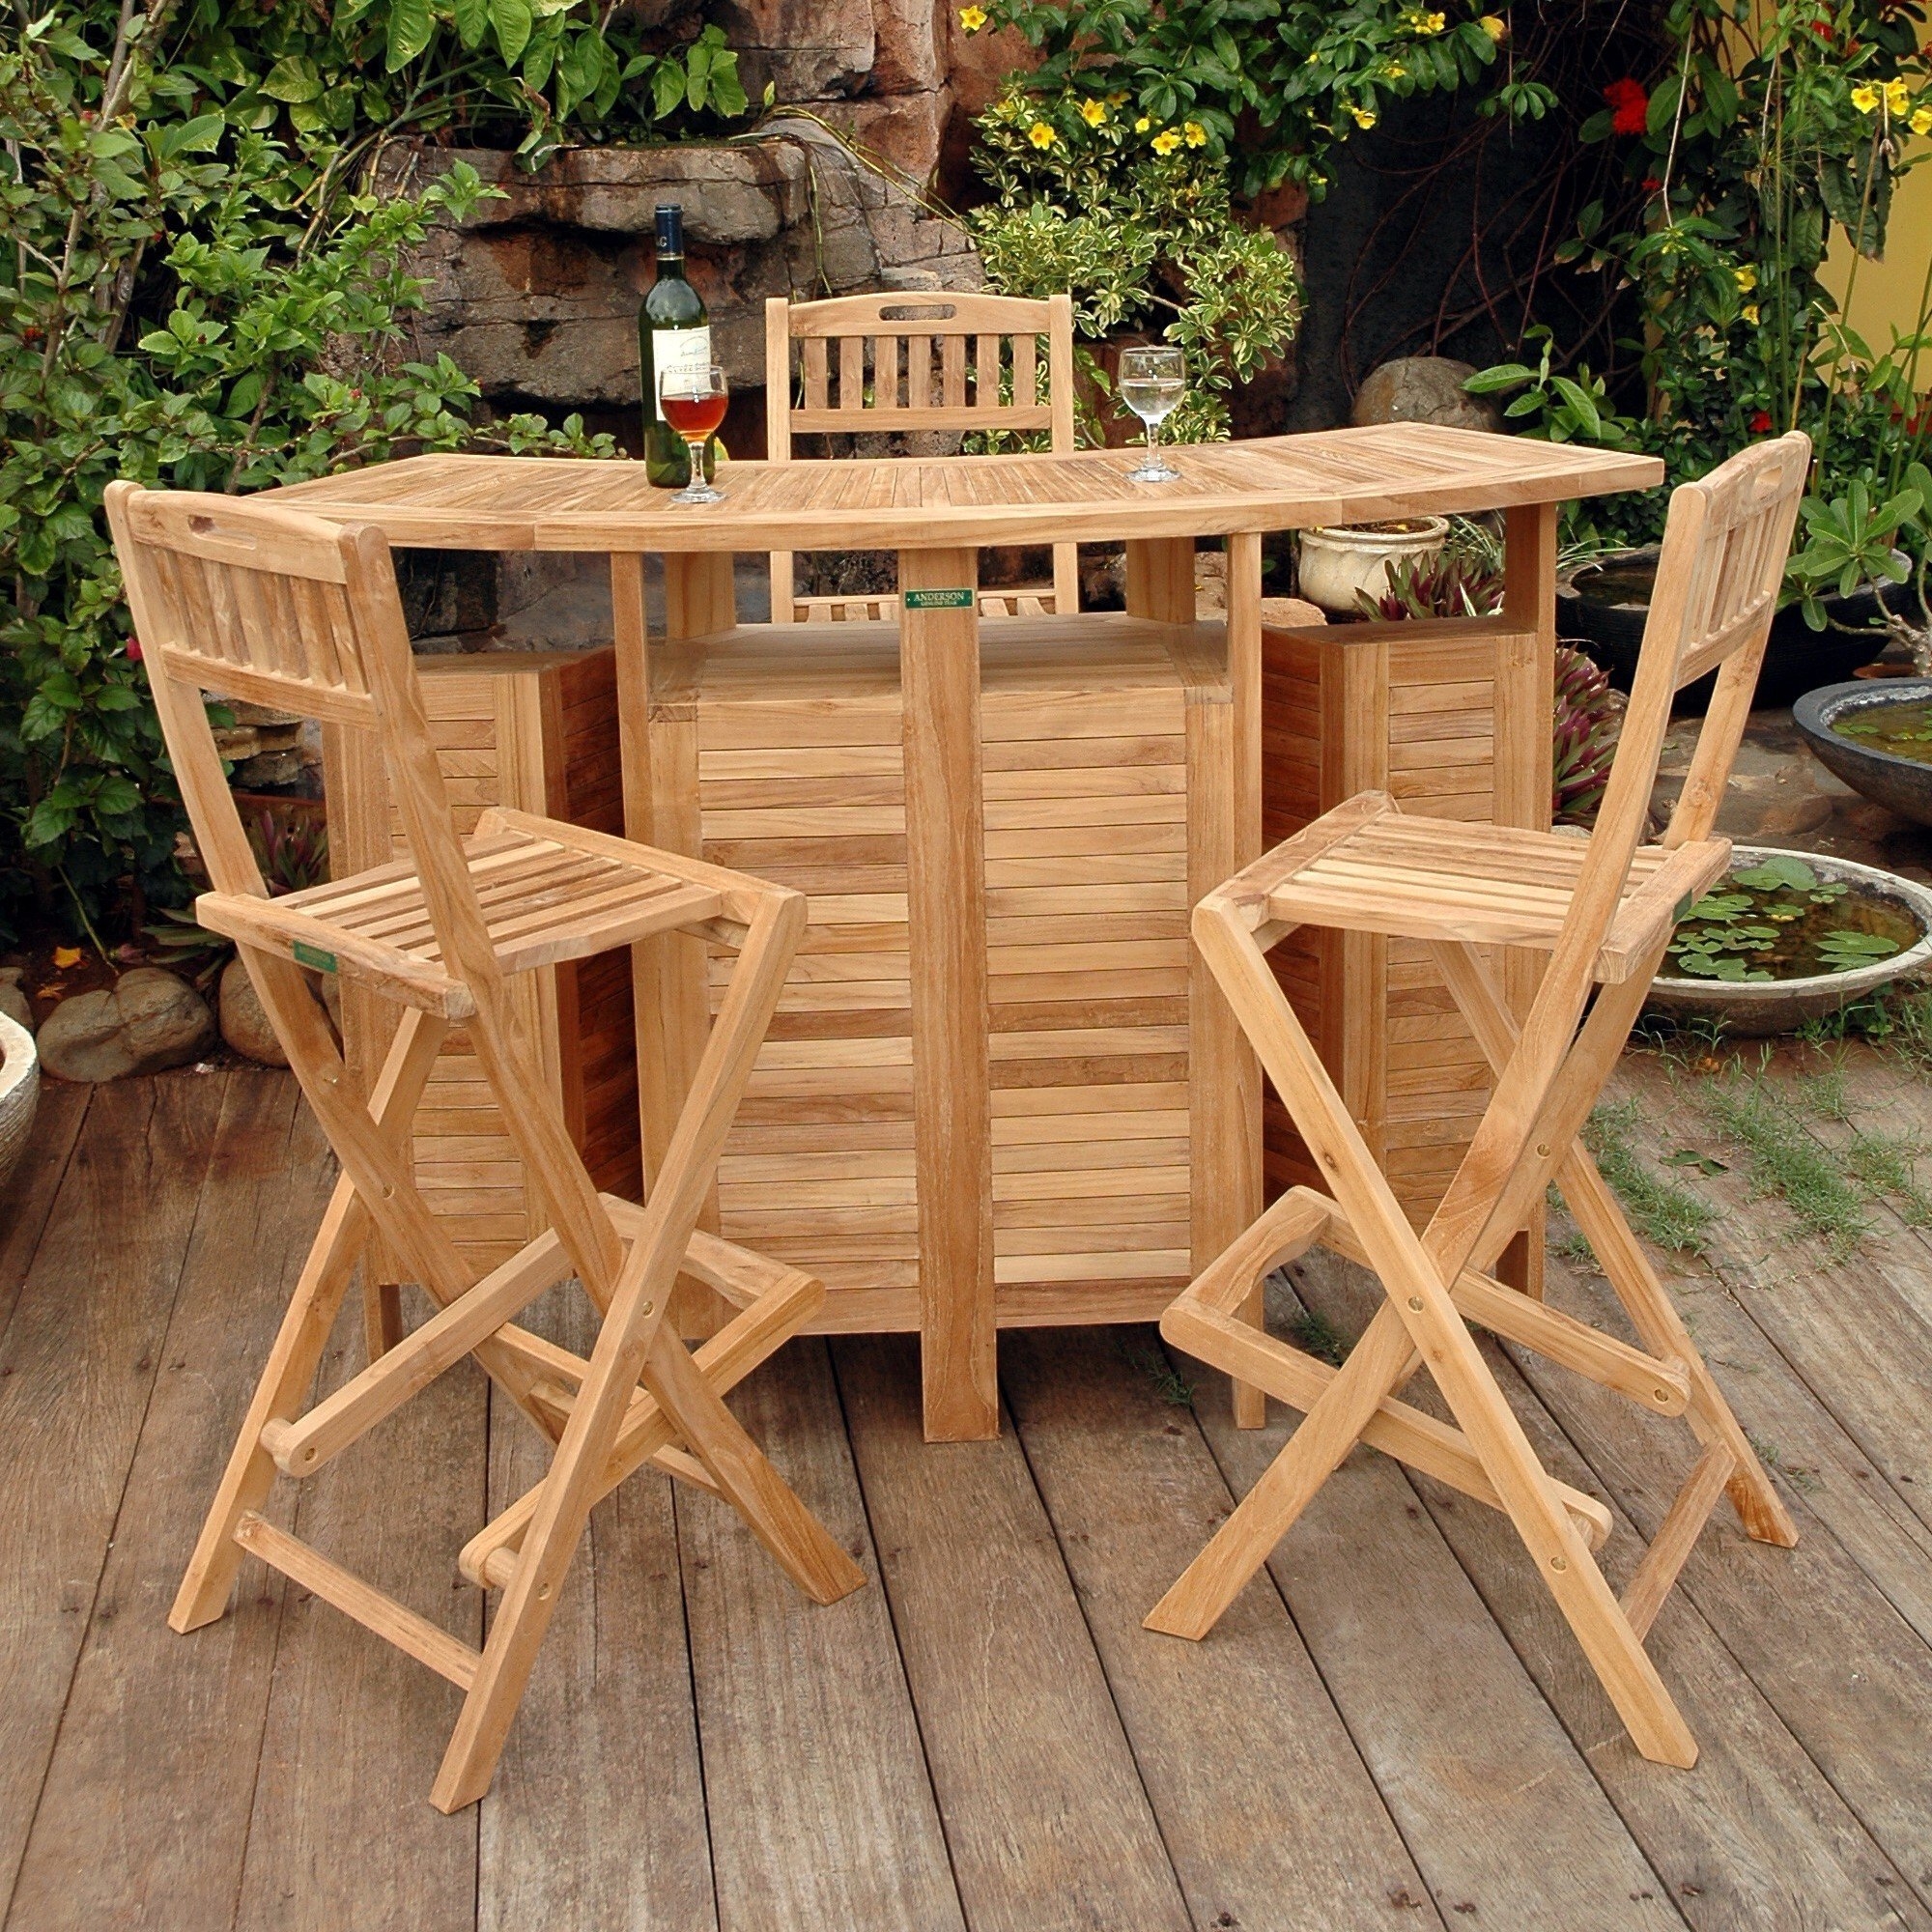 Alta vista teak wood folding bar and bar stool set